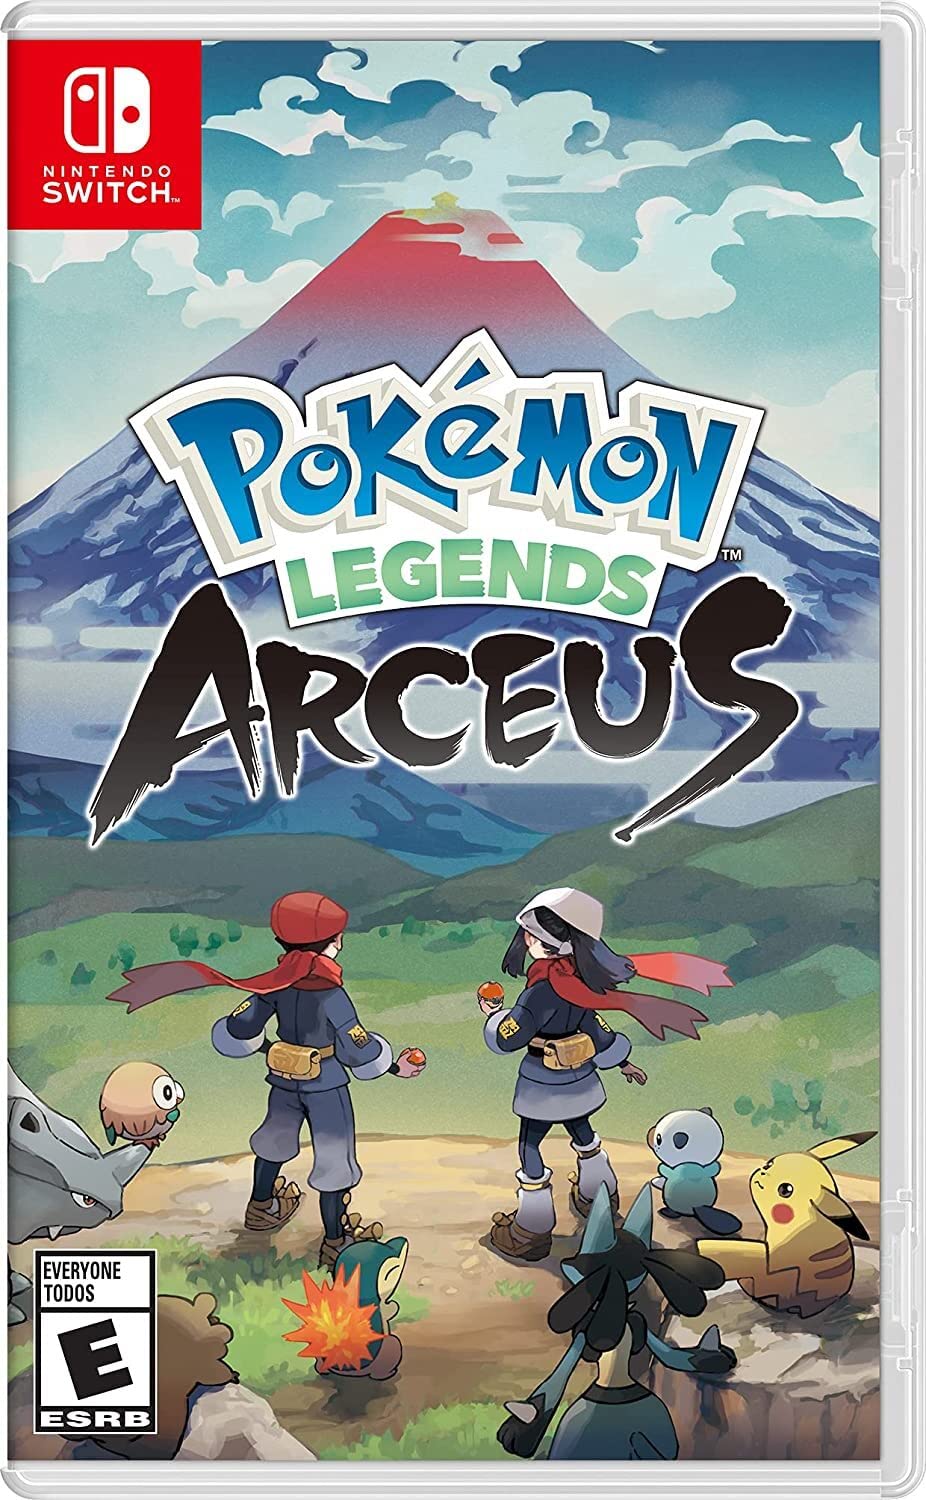 لعبة Pokémon Legends Arceus لجهاز نينتندو سويتش.